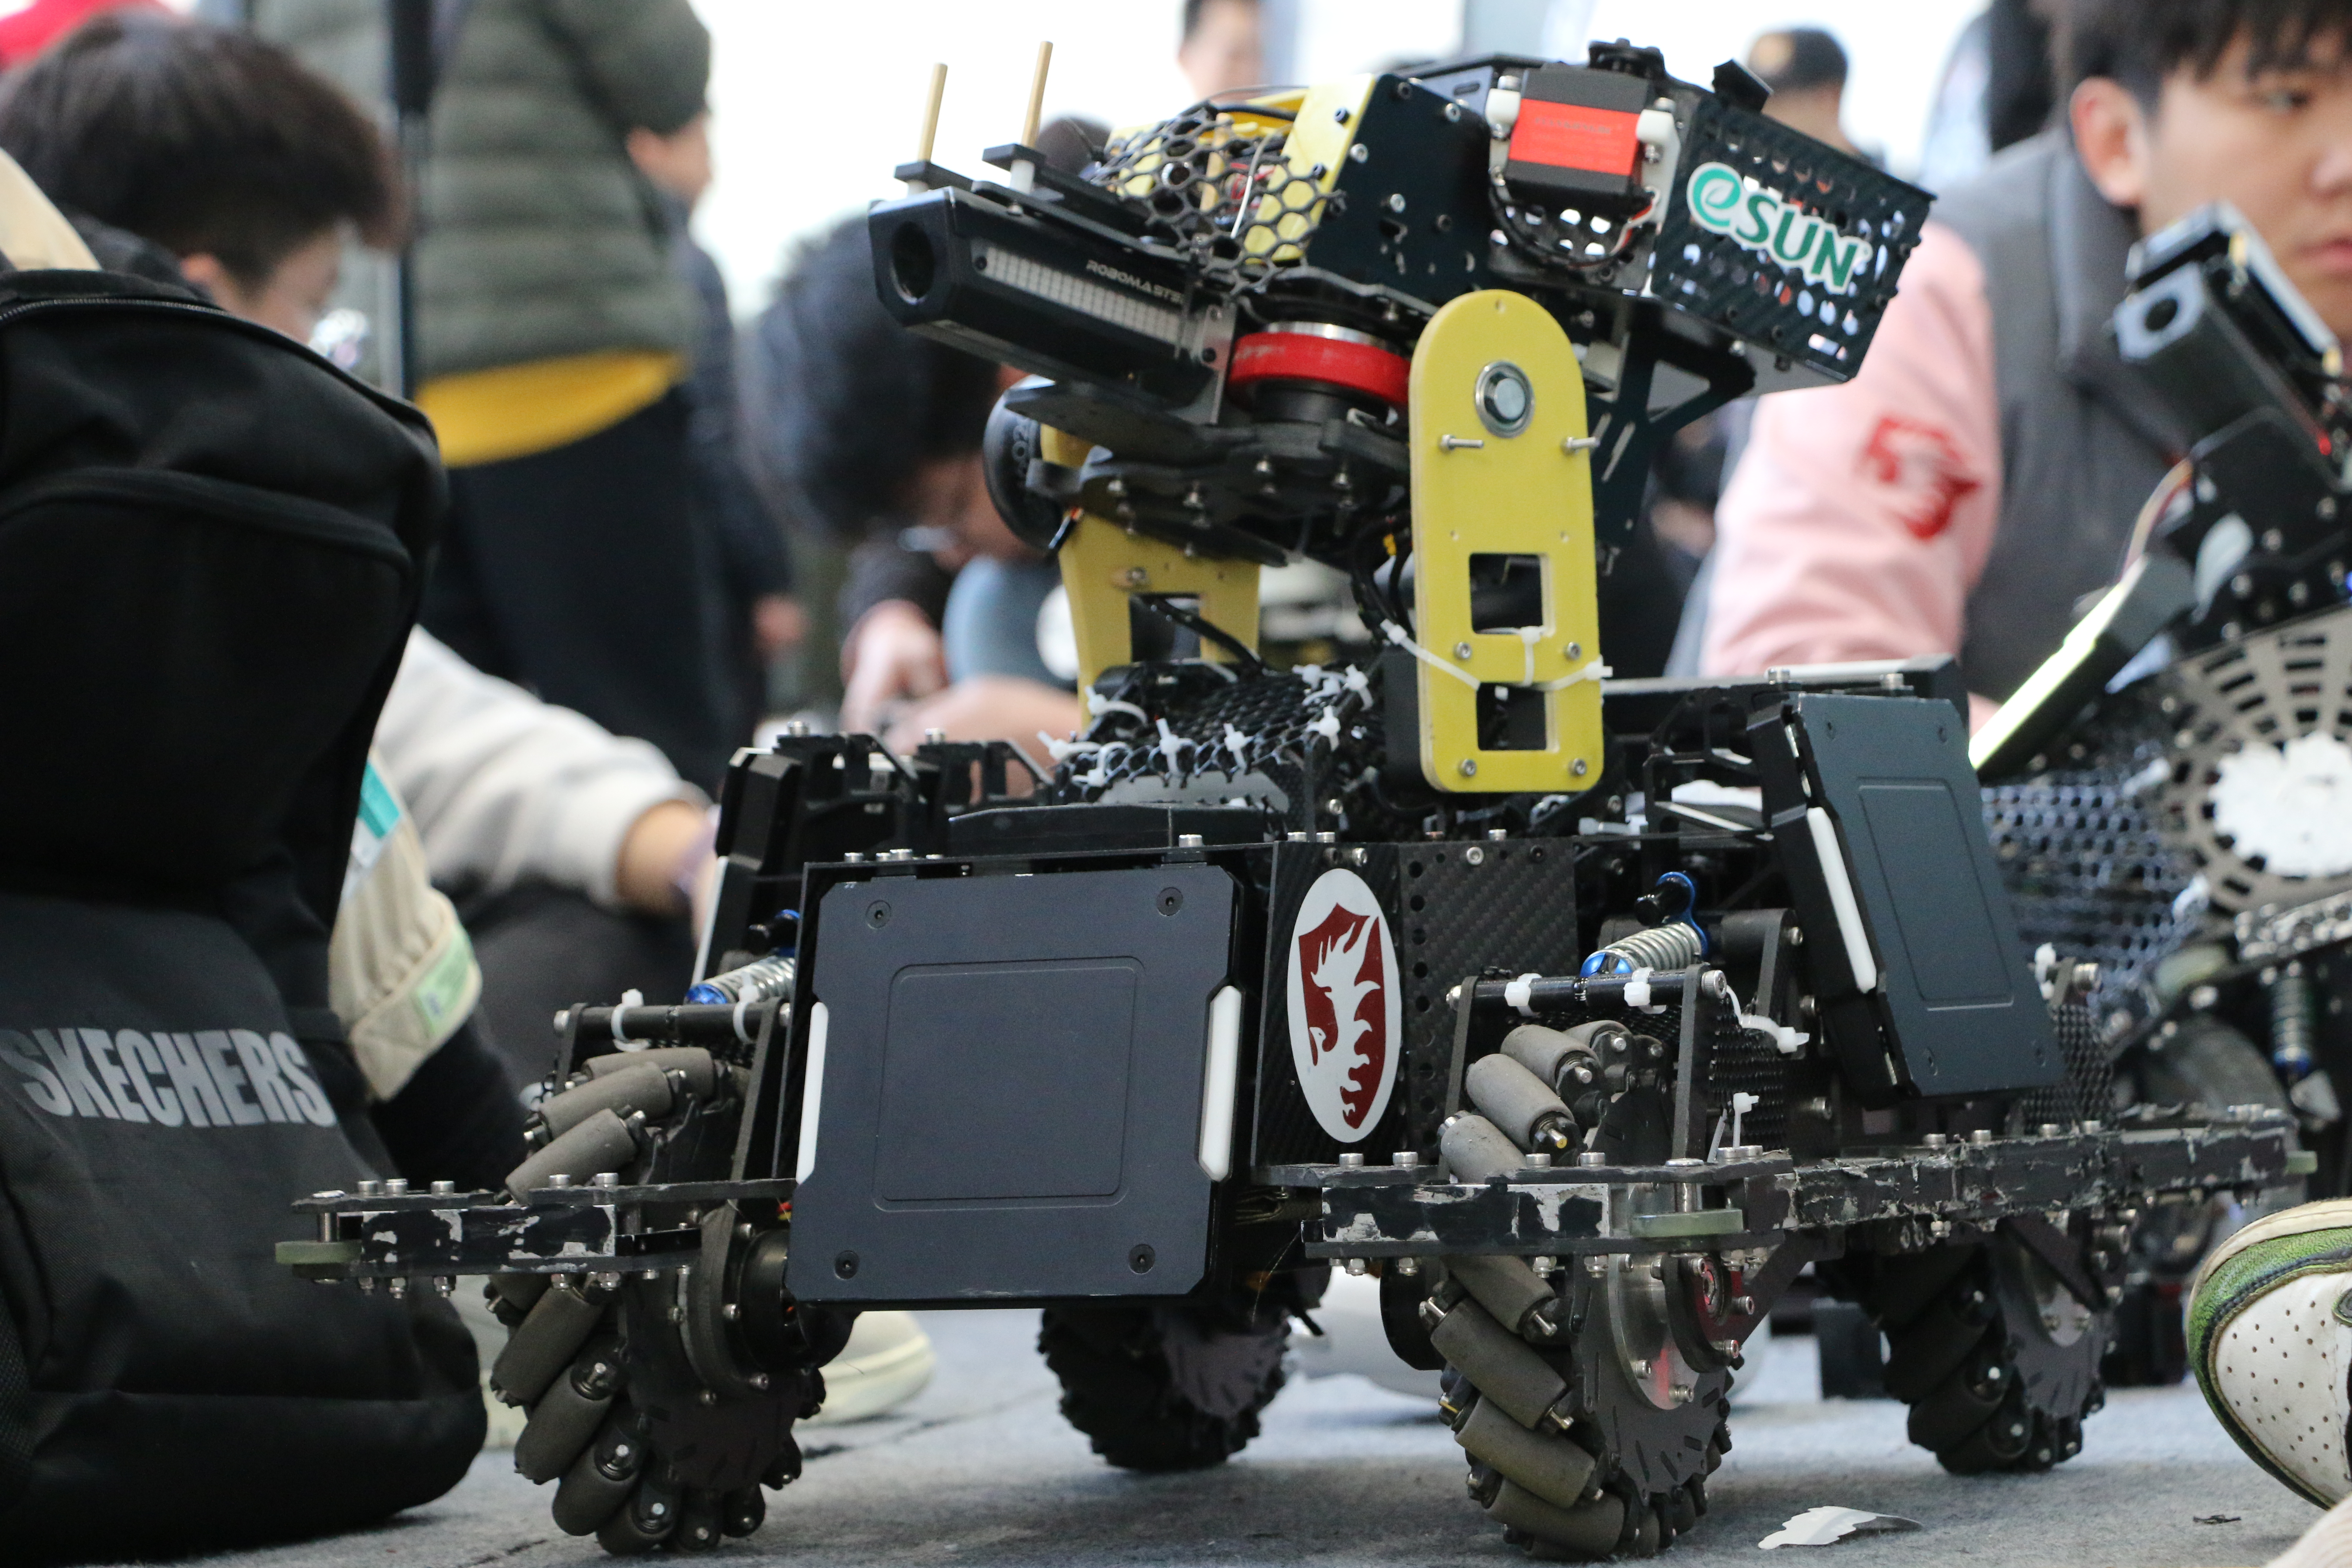 ทีมหุ่นยนต์ BOF ของวิทยาลัยการบินและอวกาศมหาวิทยาลัยนานกิง